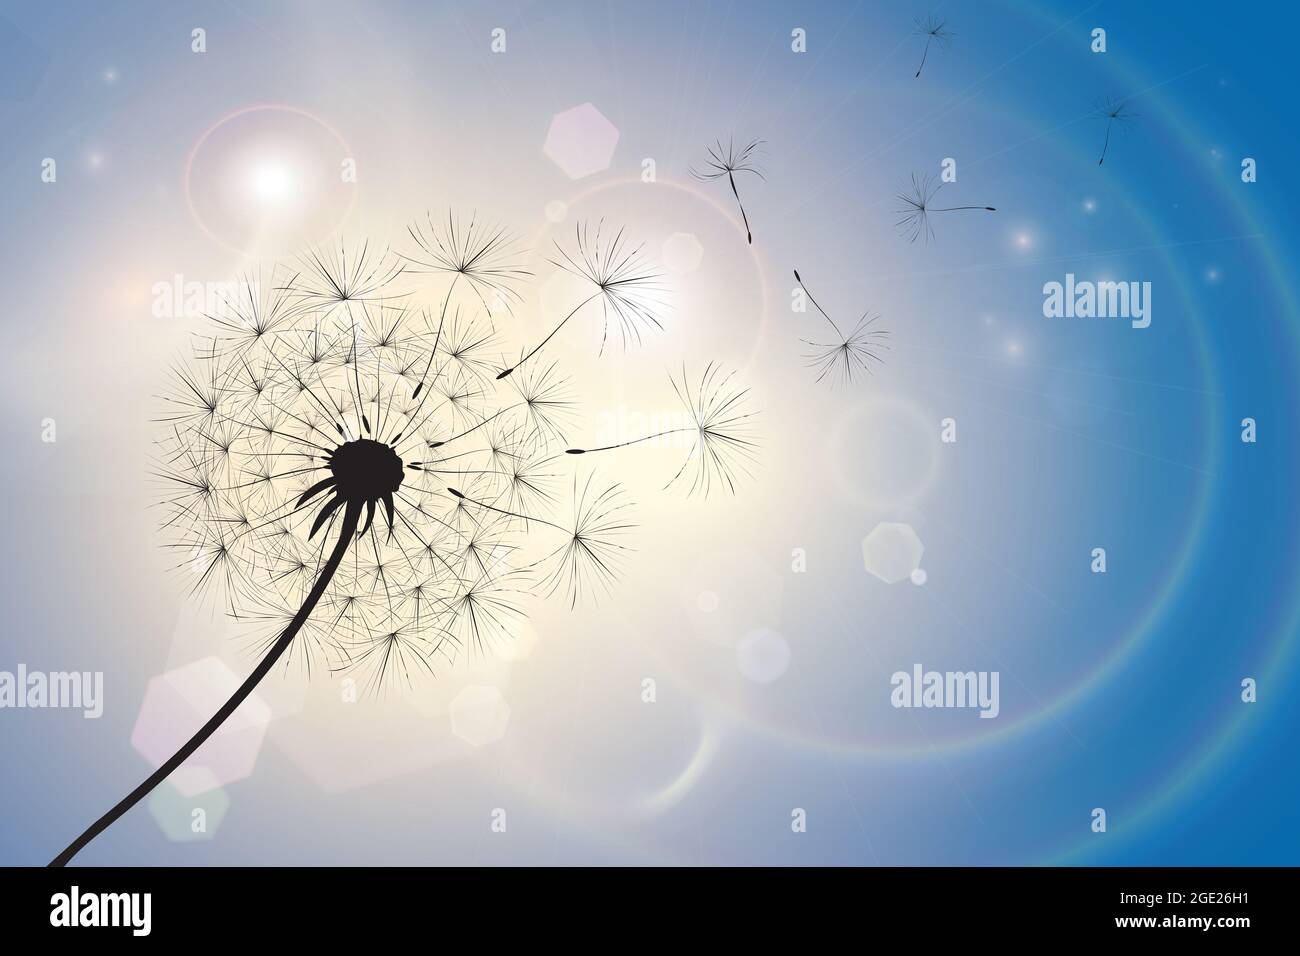 Silhouette eines Dandelions mit Samen, die in einer Sommerbrise wehen. Blauer Himmel Bokeh Hintergrund mit Sonnenlicht und Licht Fackeln. EPS10 Vektorformat Leerzeichen f Stockfoto